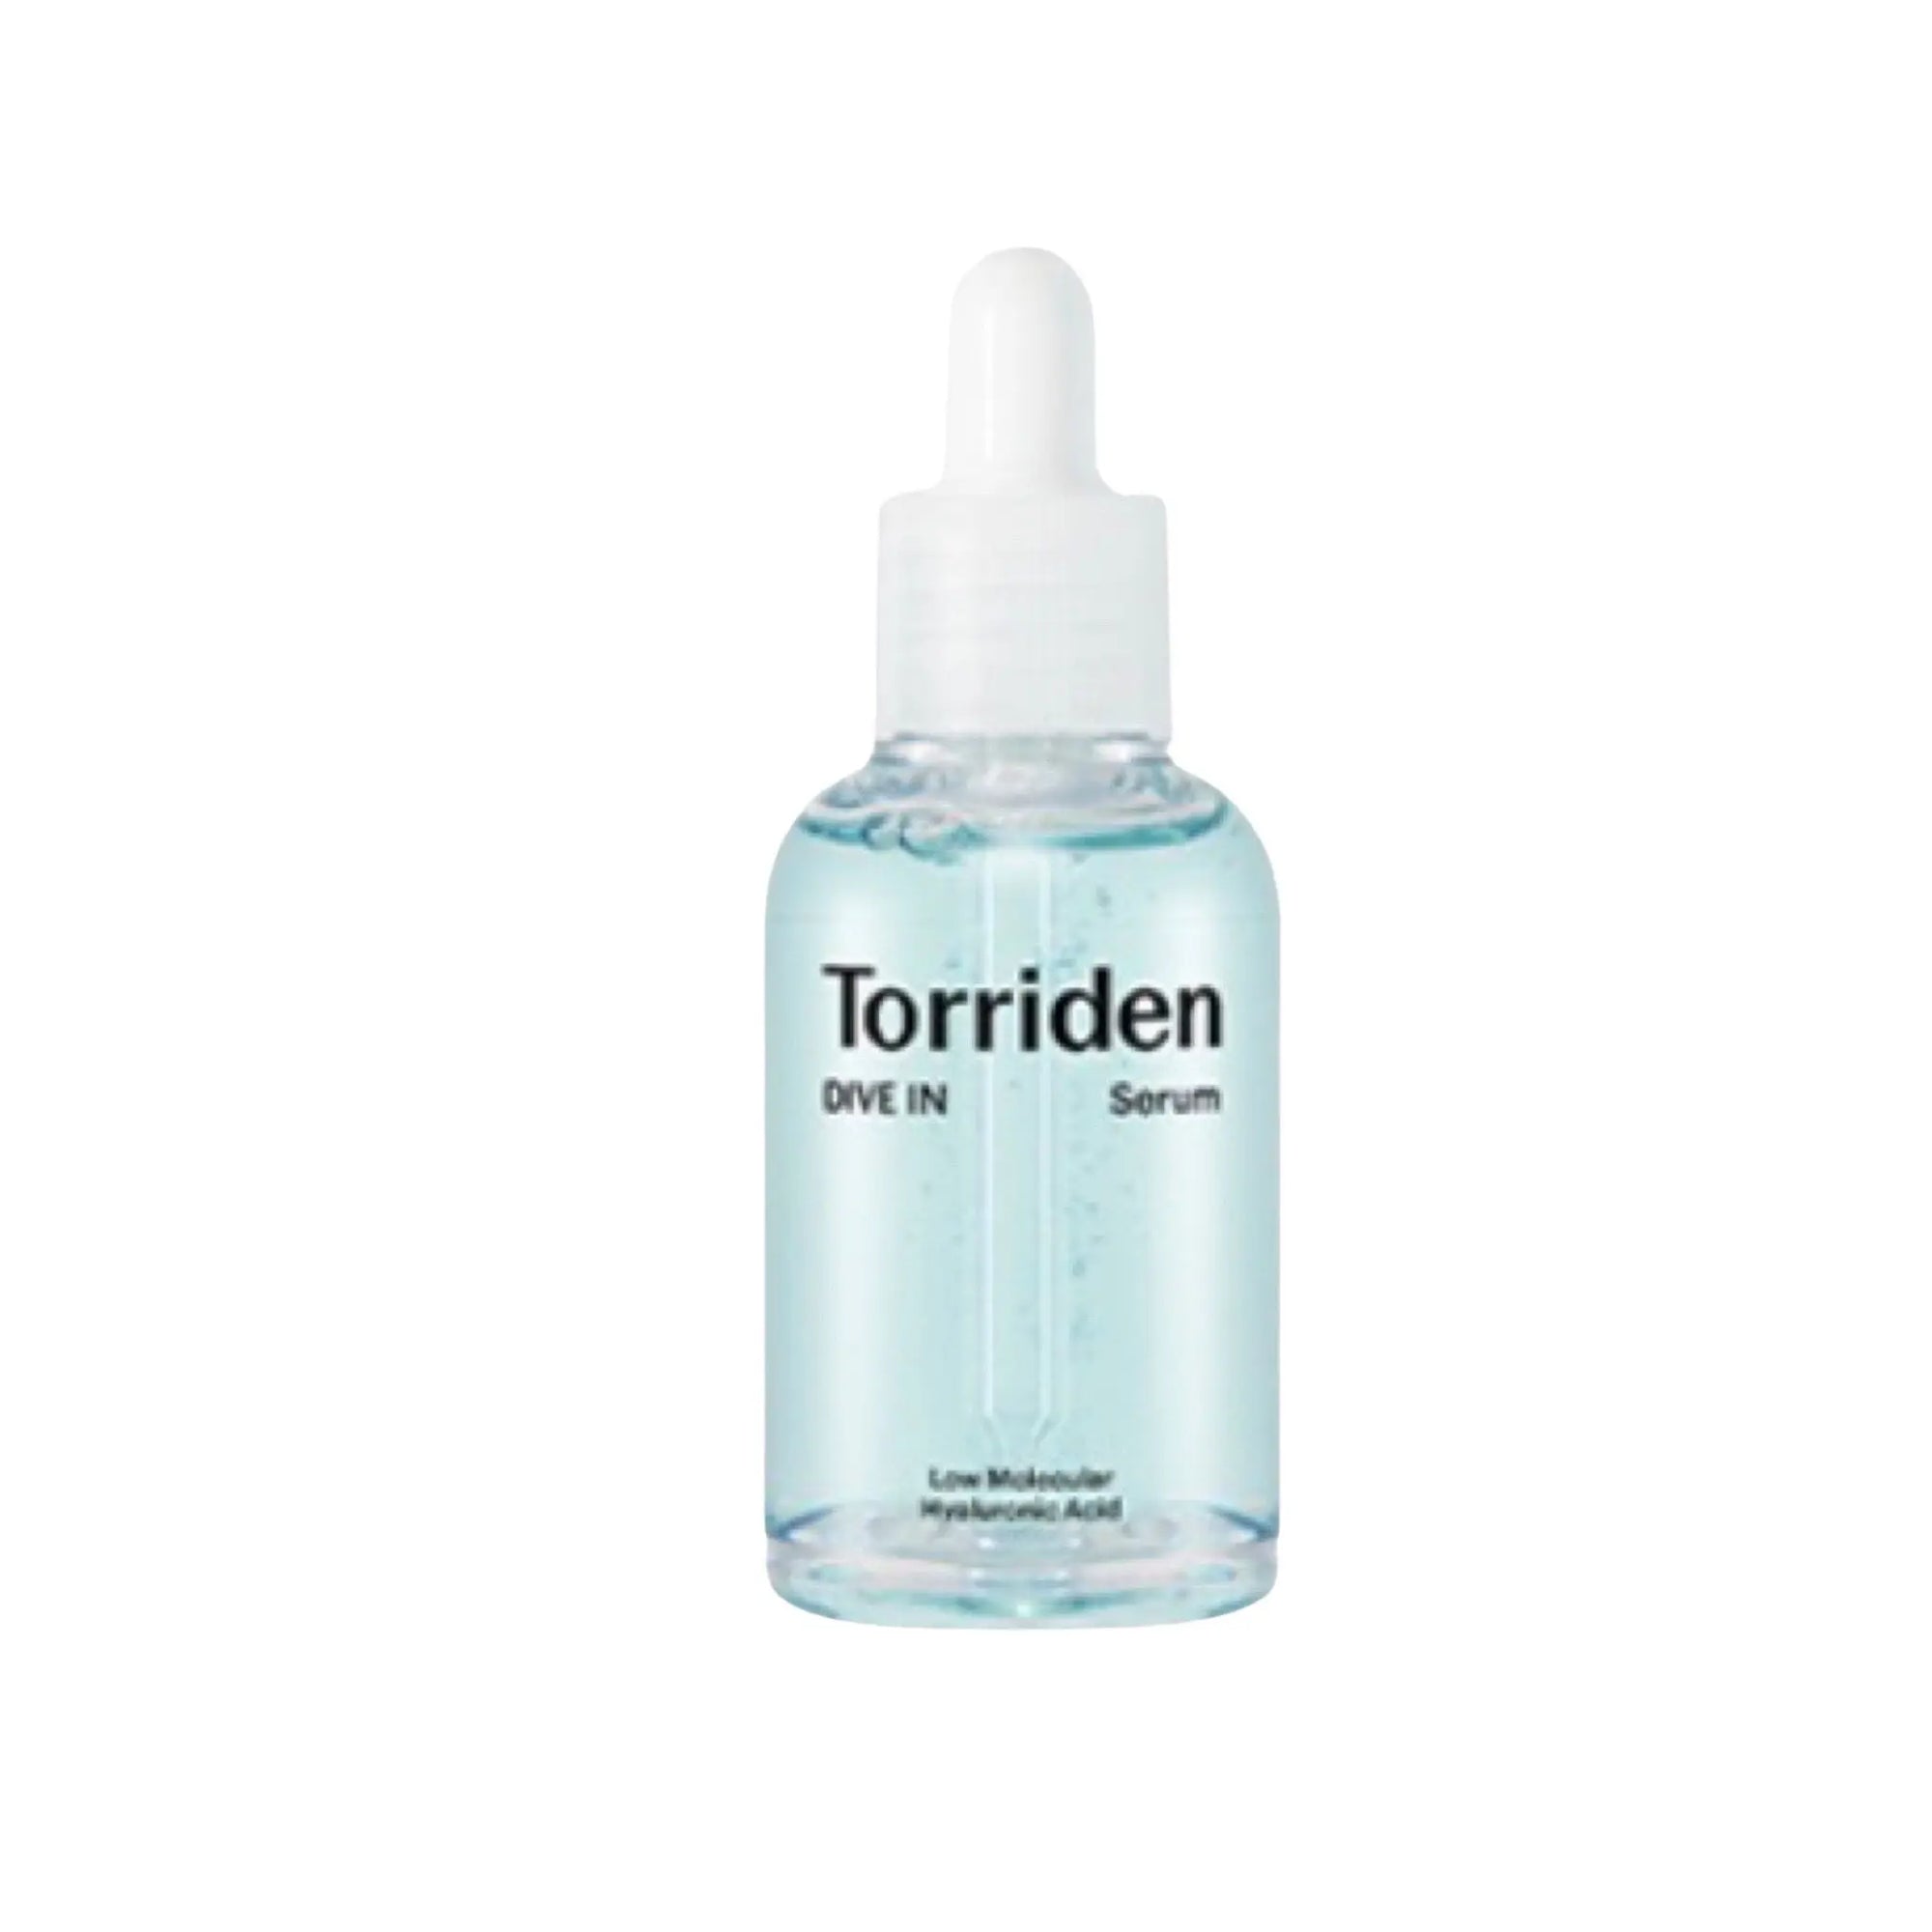 Torriden - Dive-In Low Molecular Hyaluronic Acid Serum 50mL Torriden